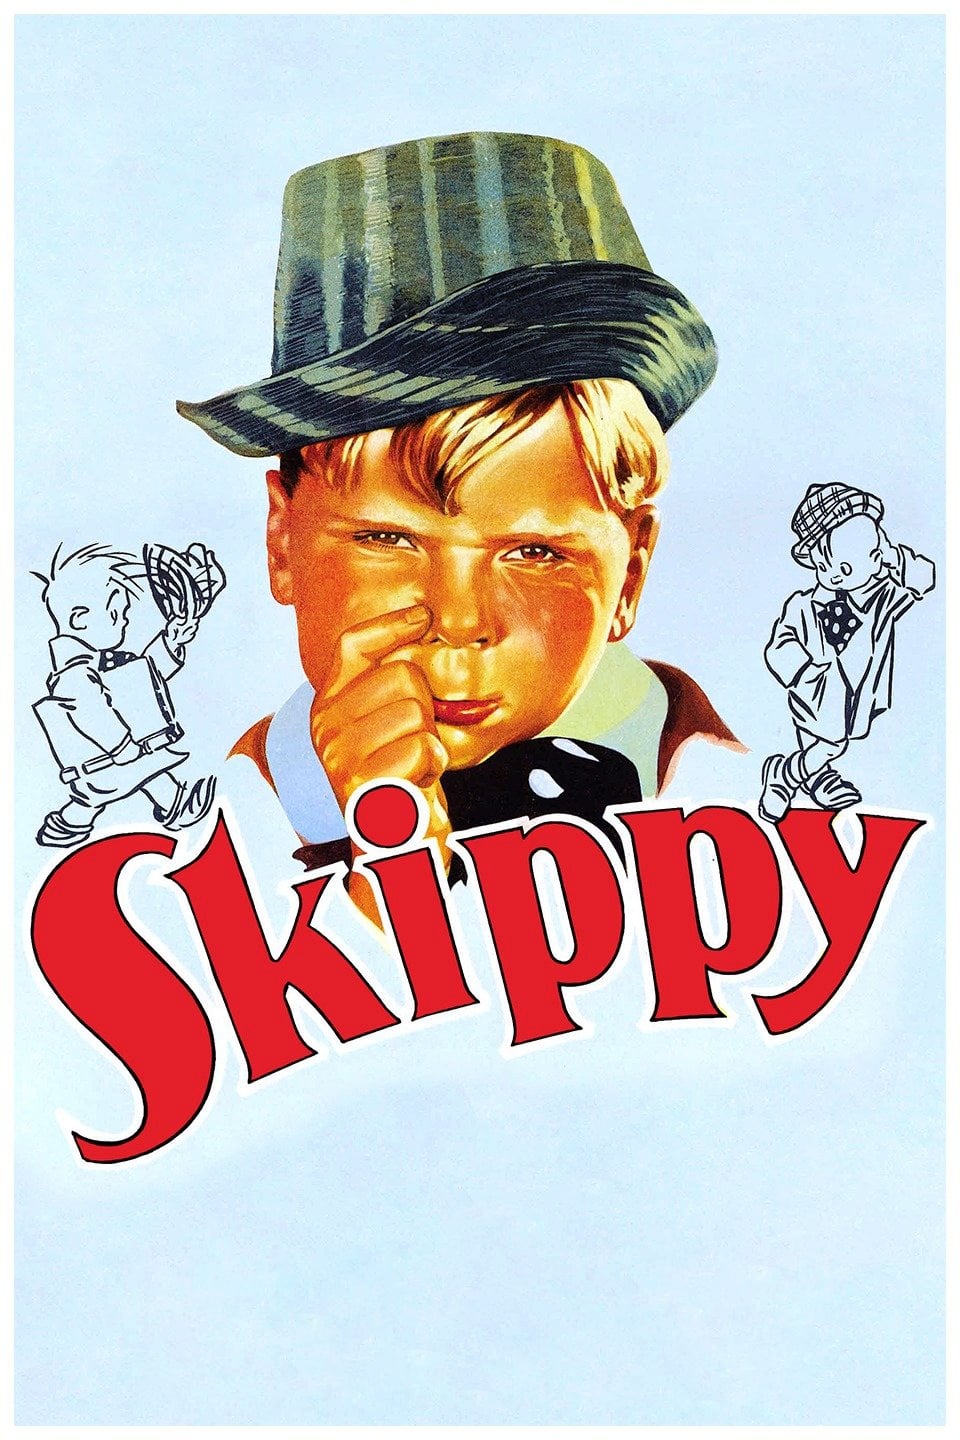 Skippy Series9 Watch movies online free full series